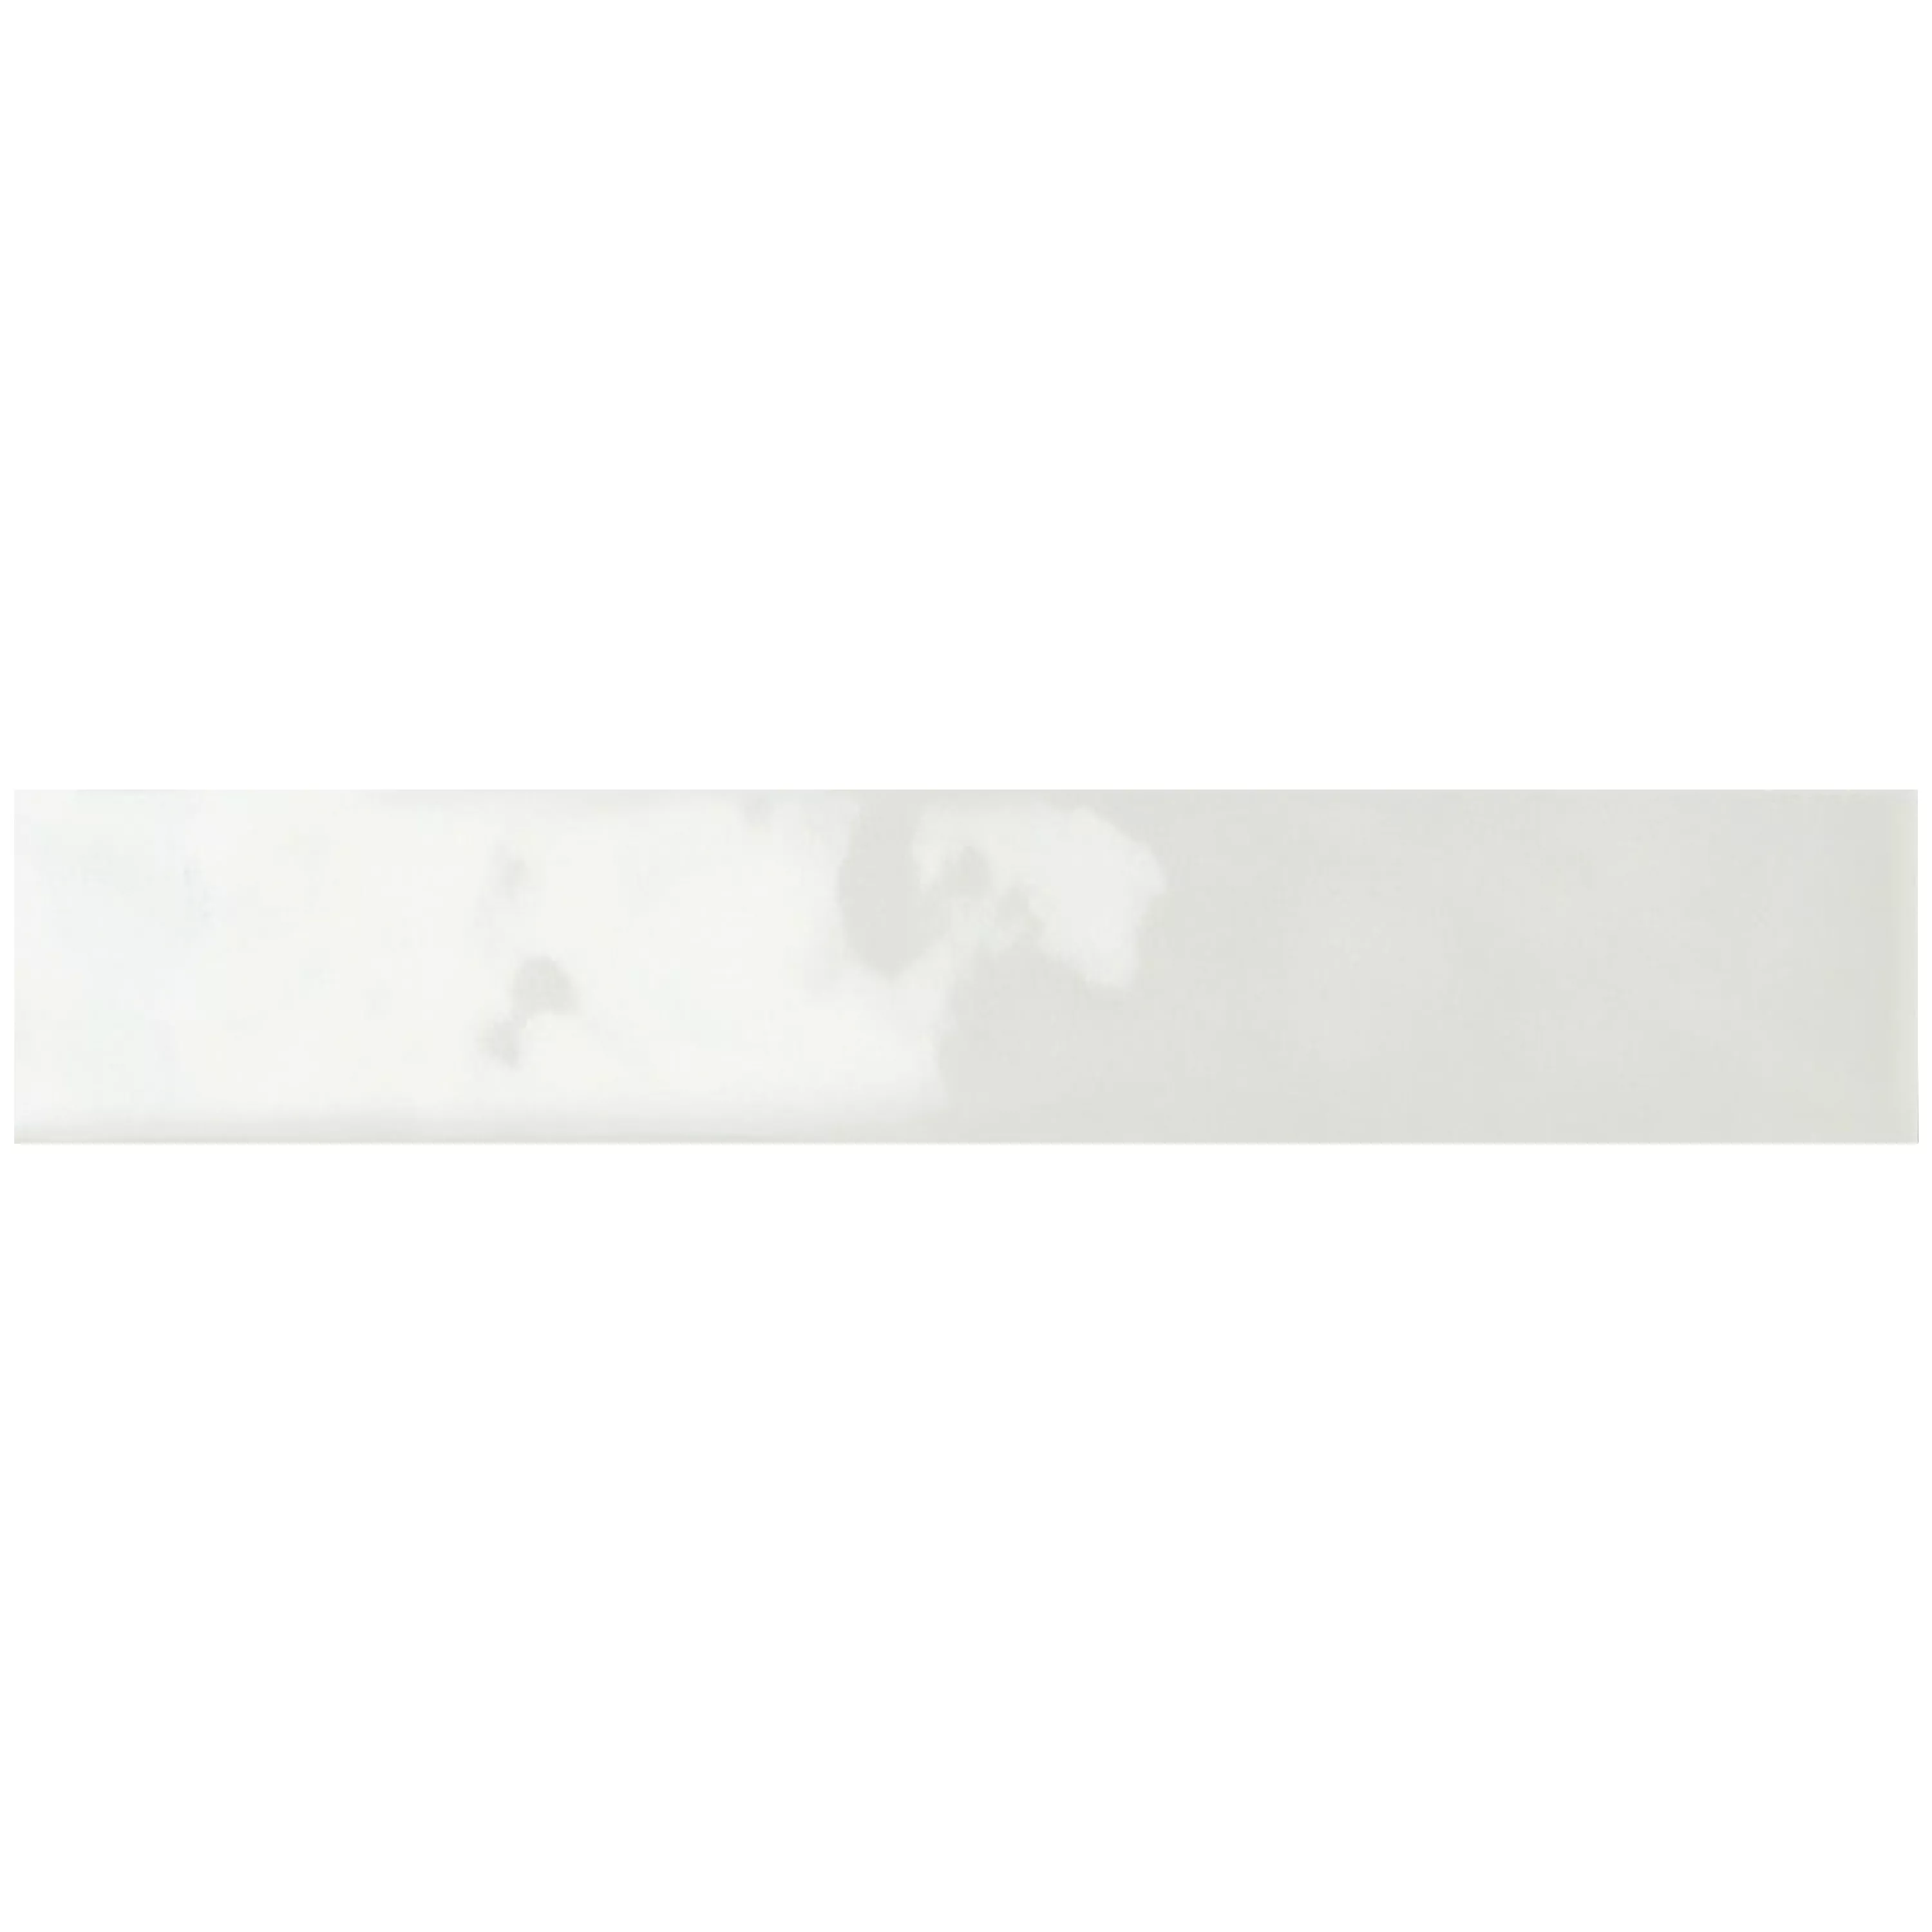 Muestra Revestimientos Montreal Corrugado Blanco 5x25cm